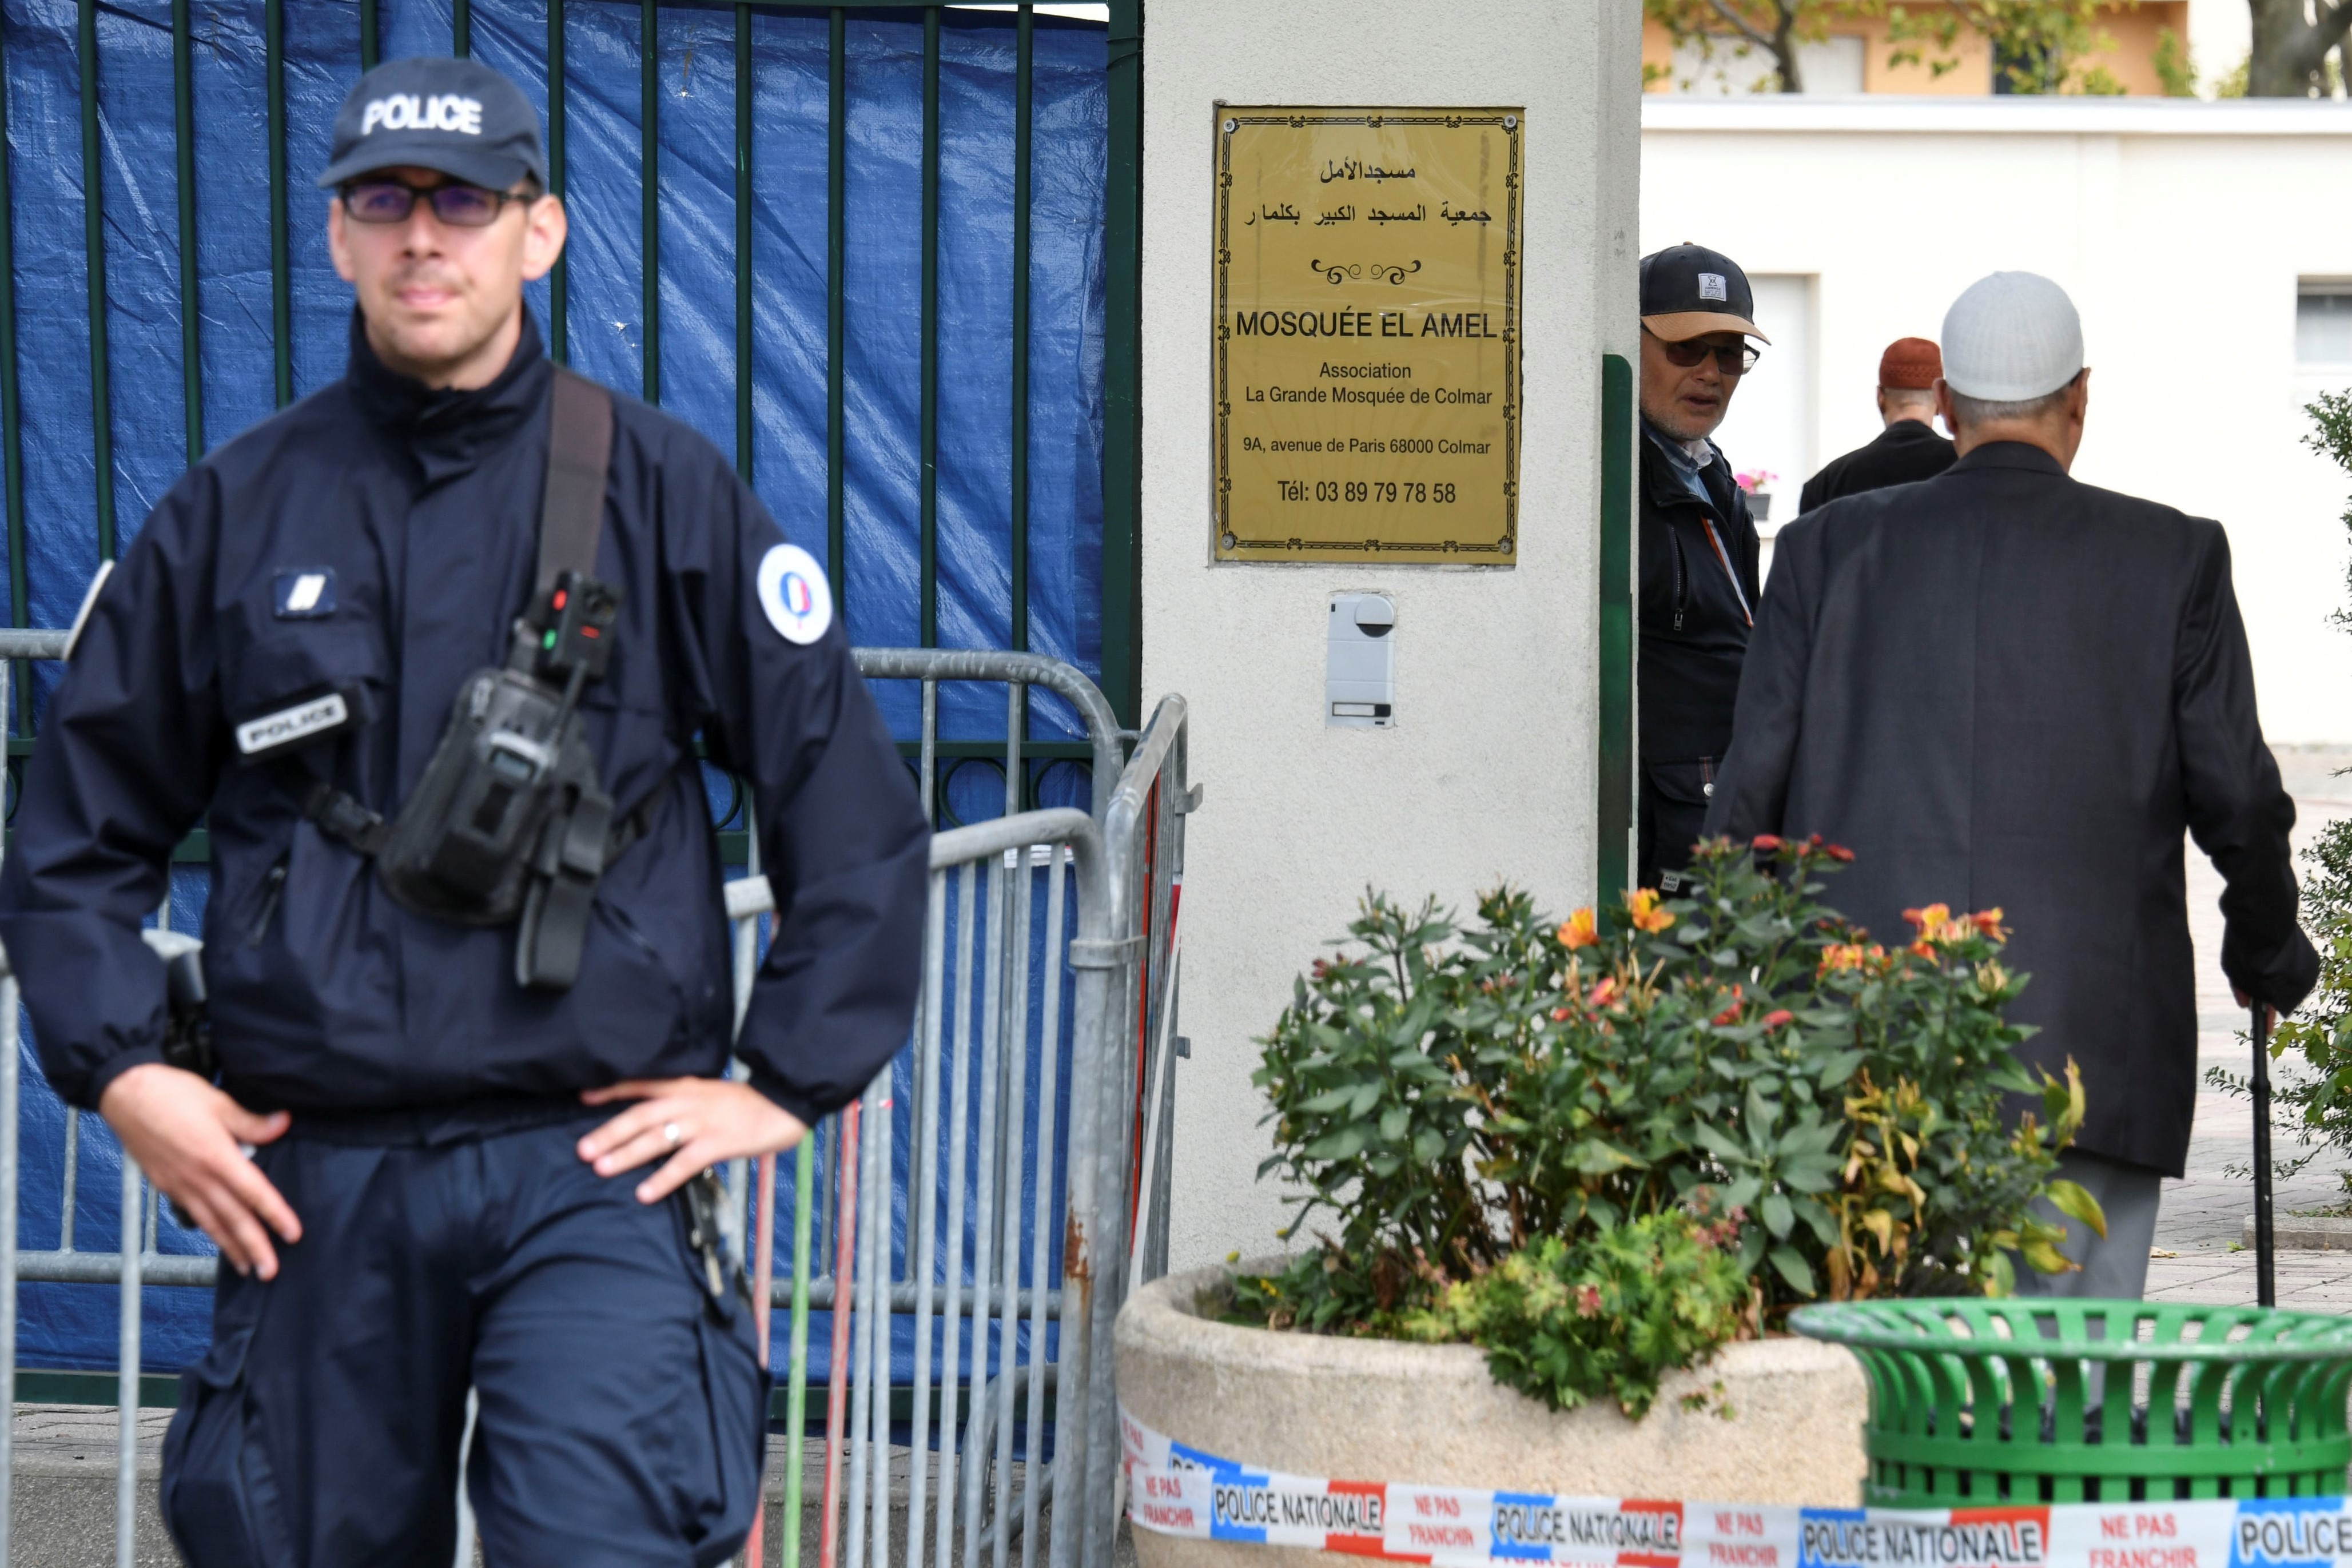 Des fidèles arrivent à la Grande Mosquée de Colmar, dans l’est de la France, tandis qu’un officier de police monte la garde le 22 septembre (AFP)